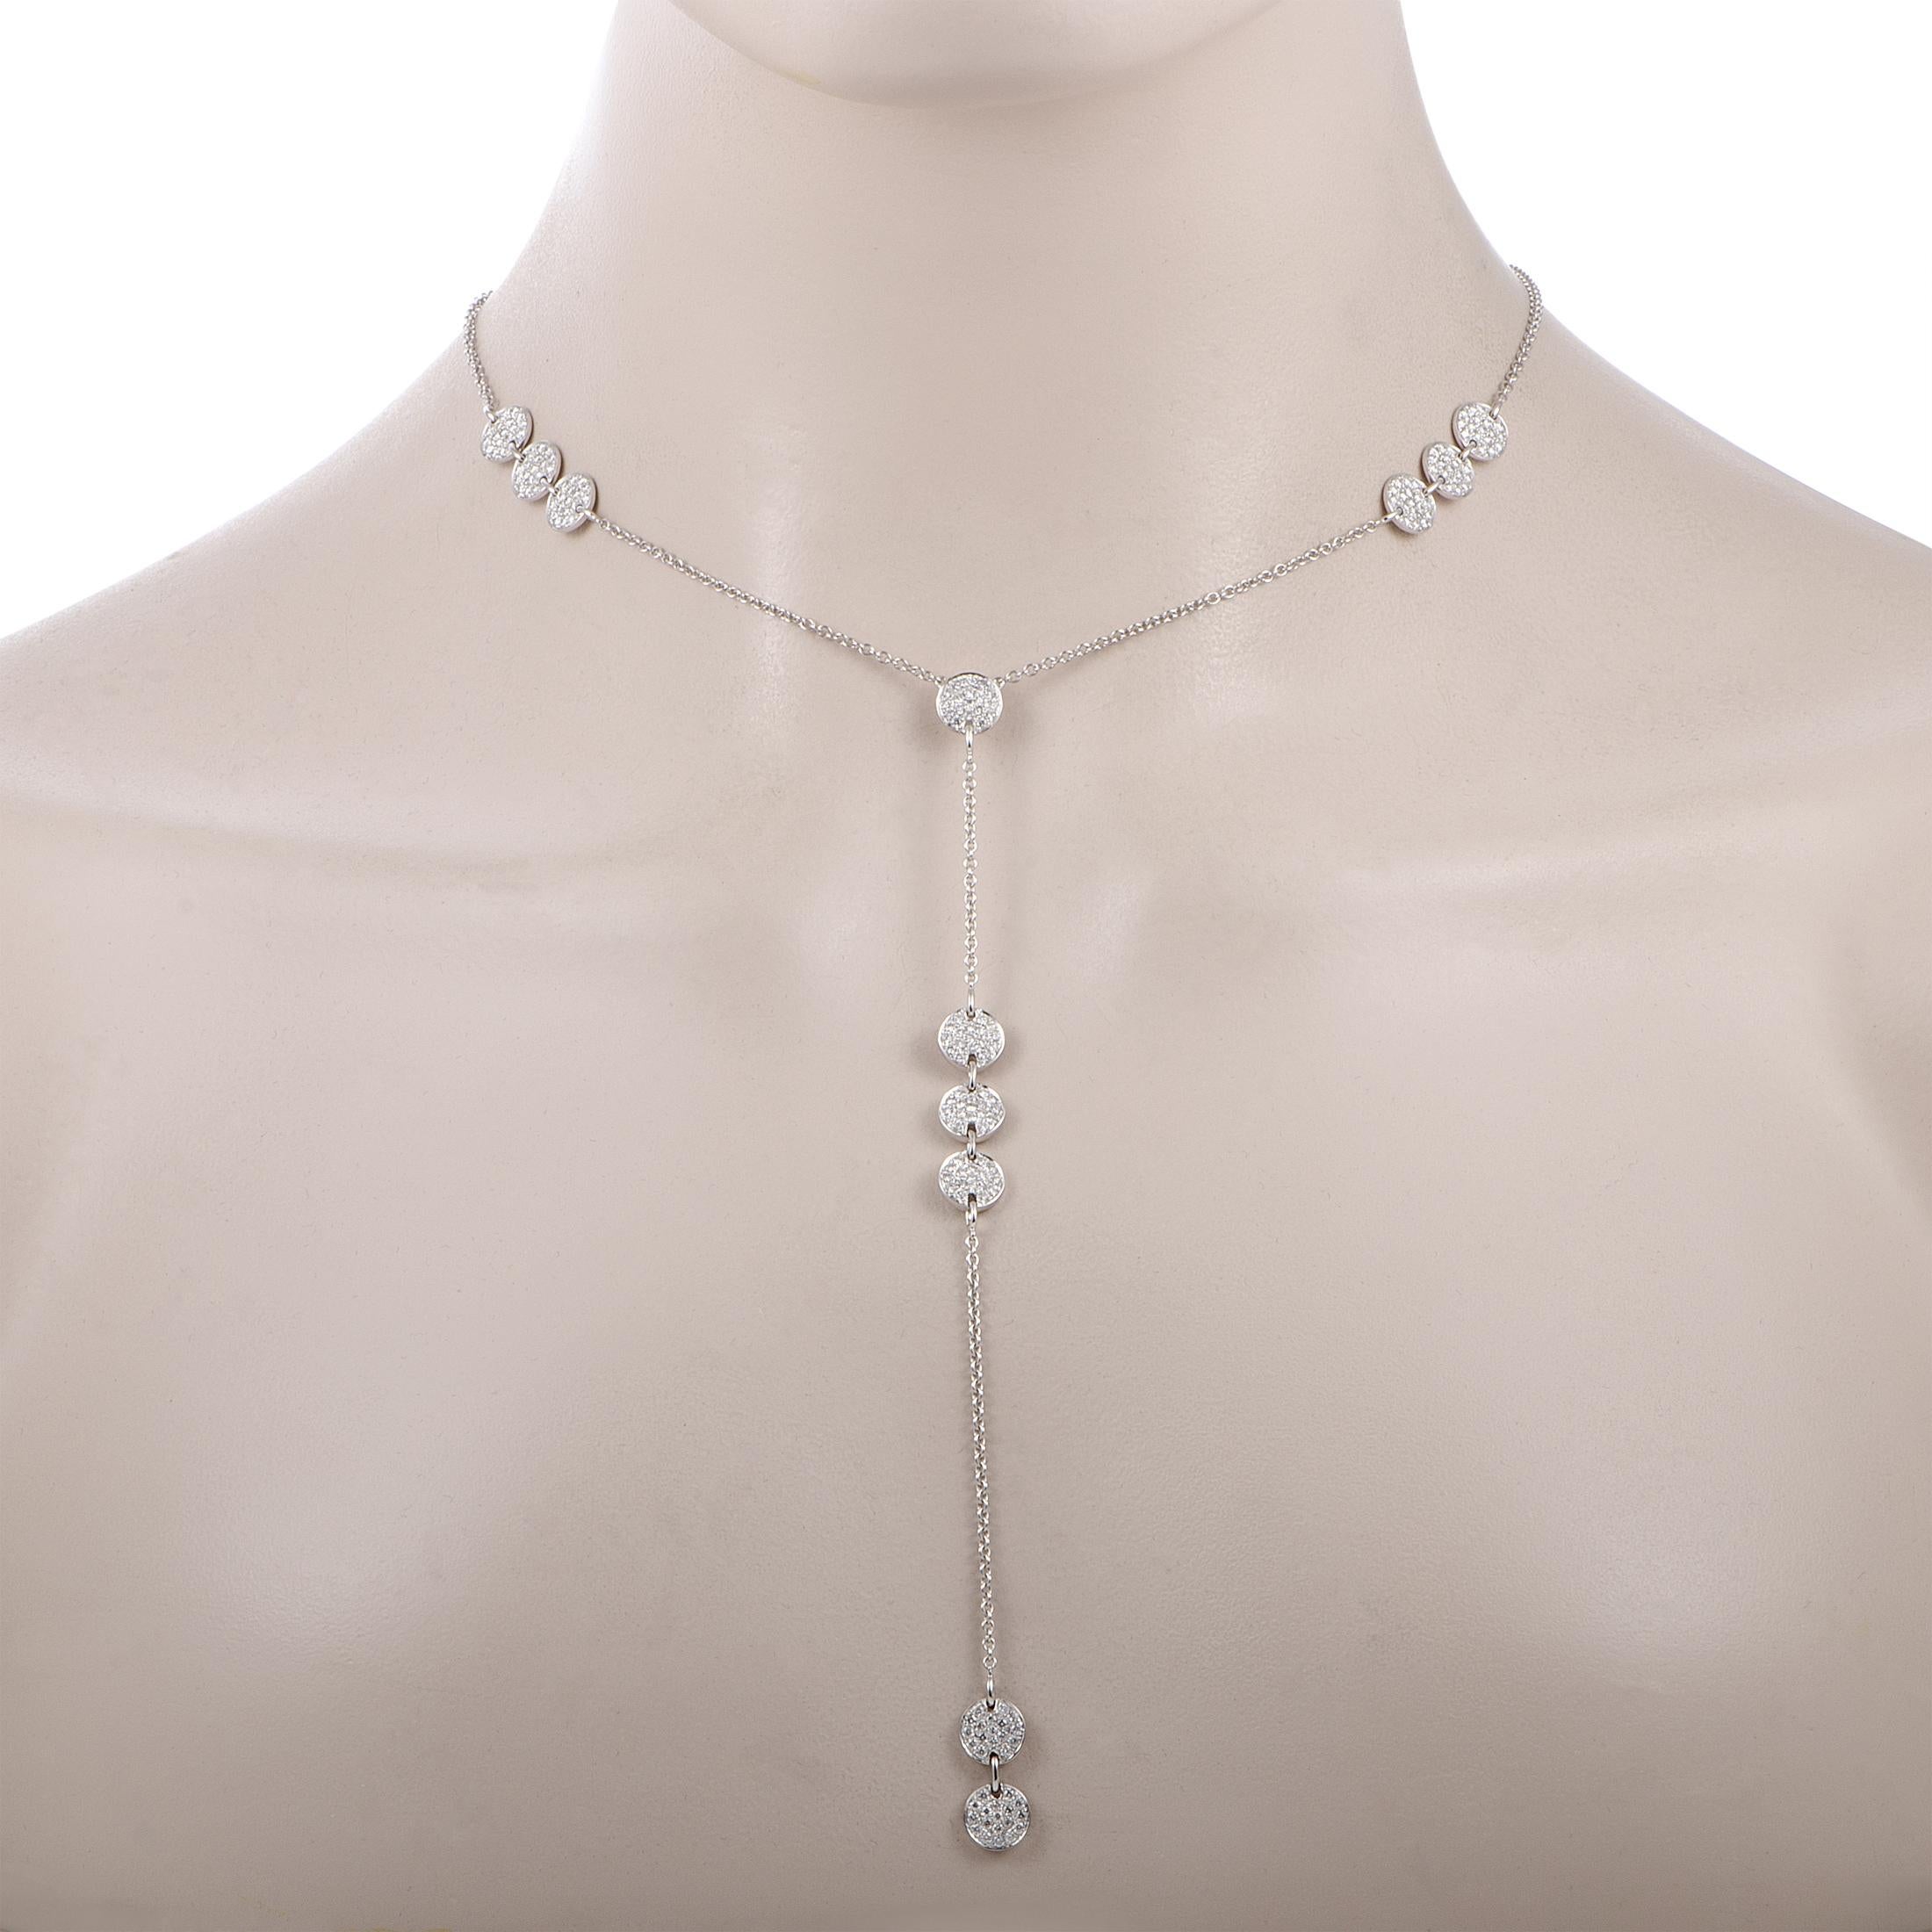 Diese LB Exclusive Halskette besteht aus 18 Karat Weißgold und ist mit Diamanten von insgesamt 2,90 Karat besetzt. Die 13,2 Gramm schwere Halskette wird mit einer 19,00 Zoll langen Kette mit Karabinerverschluss und einem Anhänger mit einer Länge von